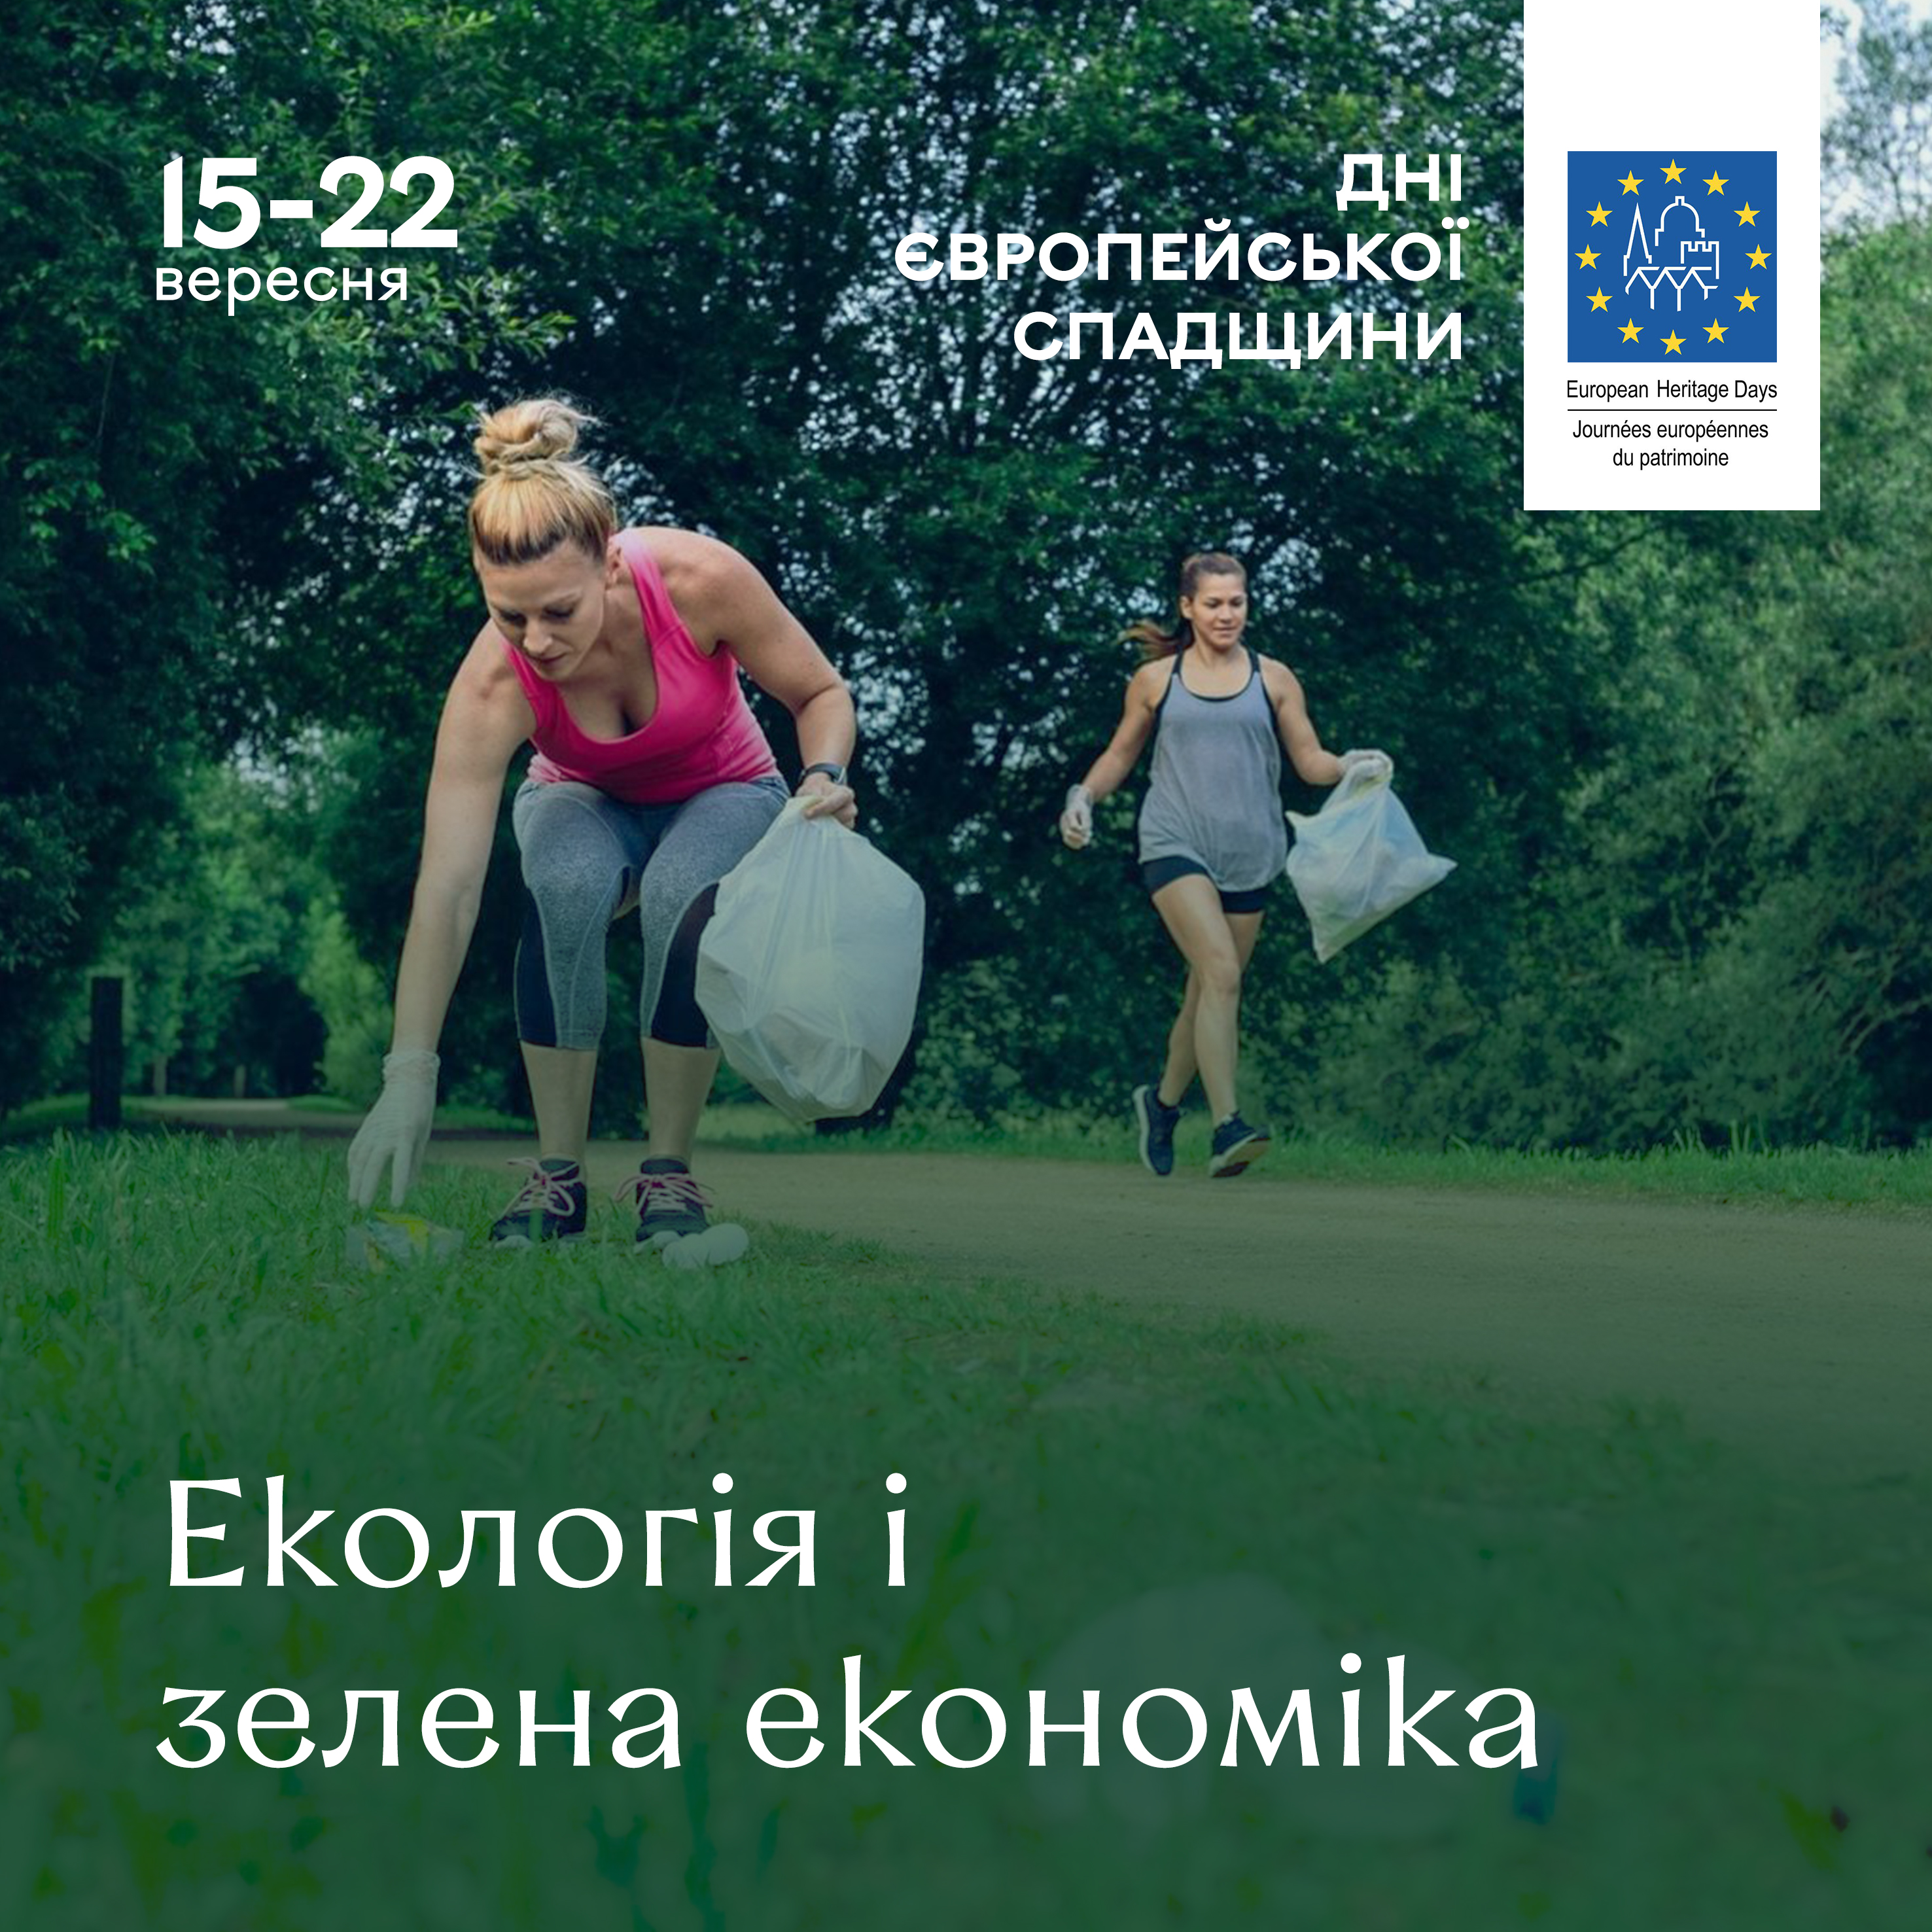 Екологічні акції, прогулянки та екскурсії: у Вінниці відзначатимуть Дні європейської спадщини